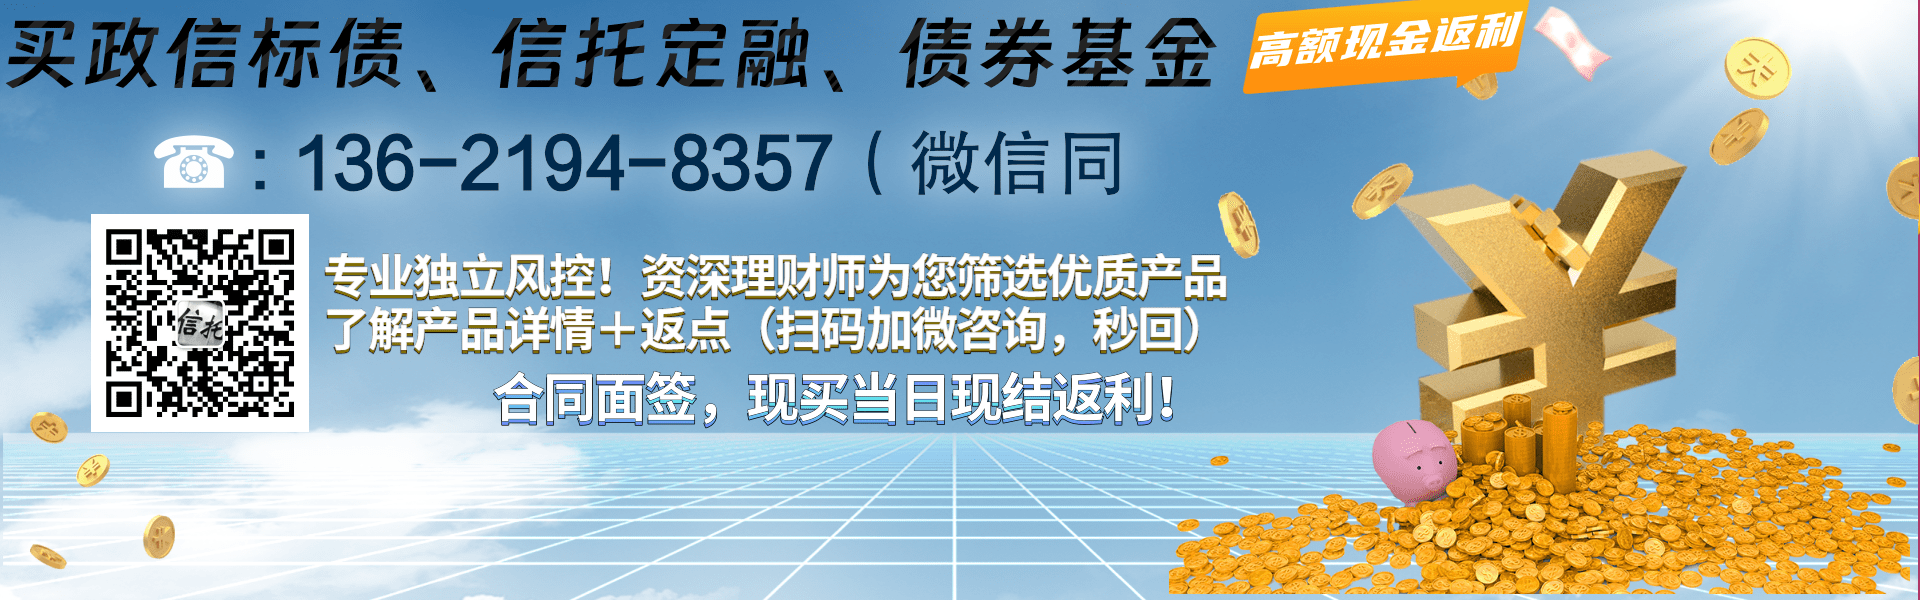 河南-舞阳县城市投资控股应收账款债权转让项目